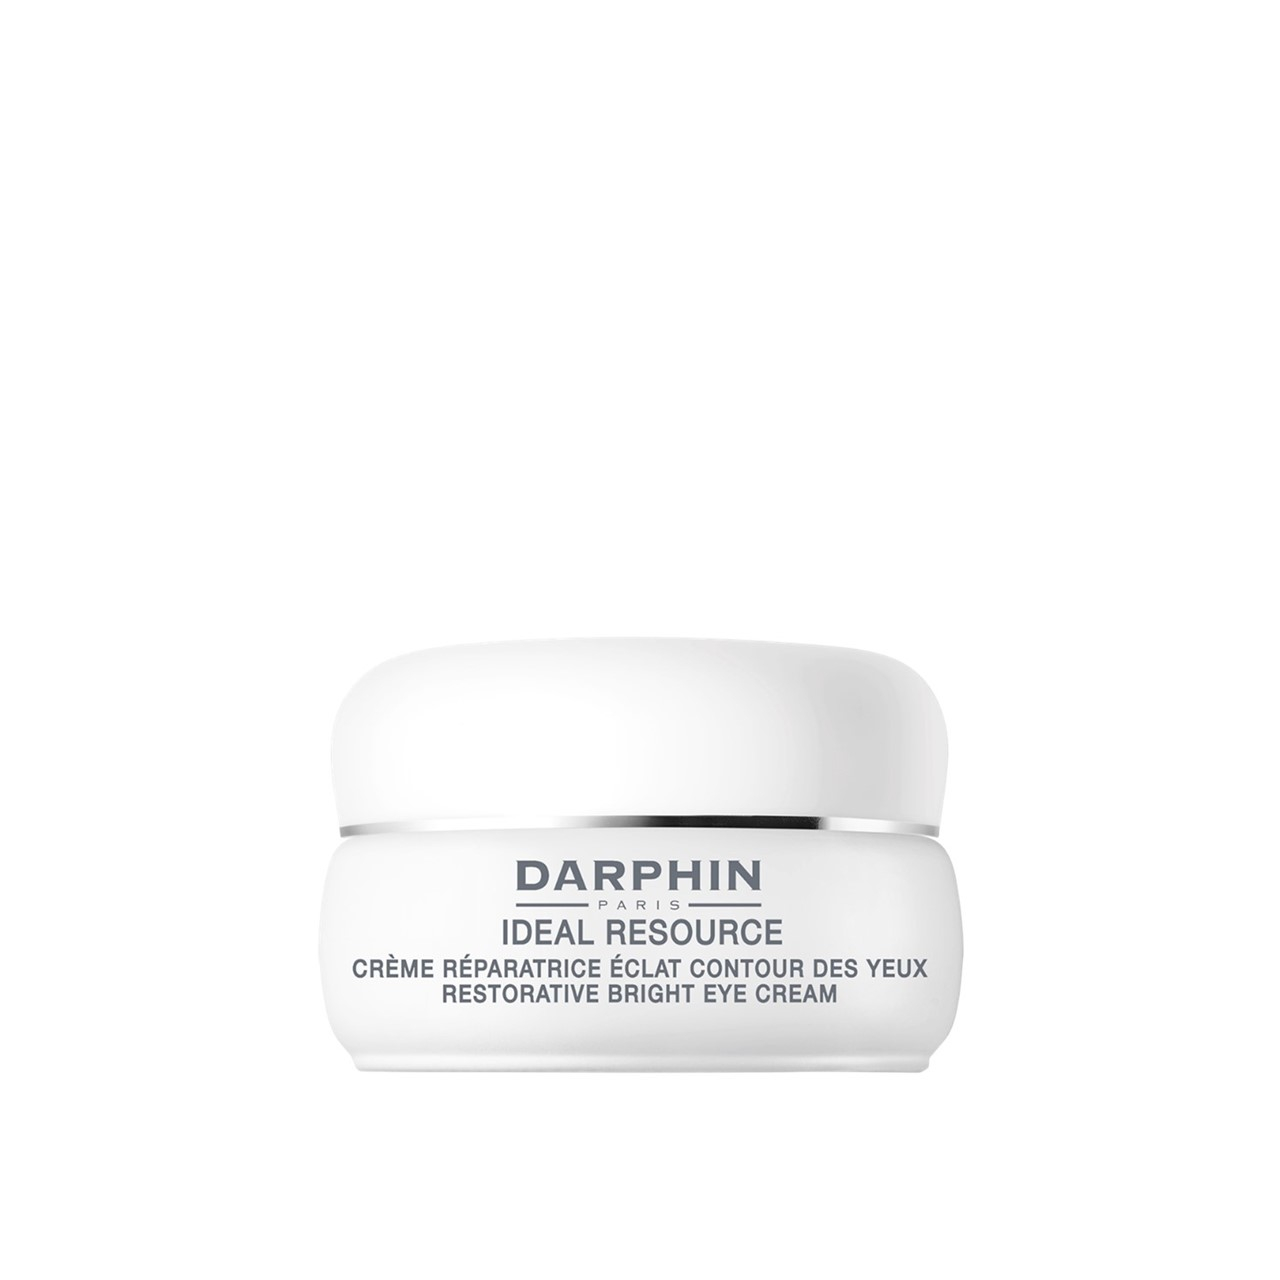 Darphin Ideal Resource Restorative Bright Eye Cream 15ml (0.51fl oz)